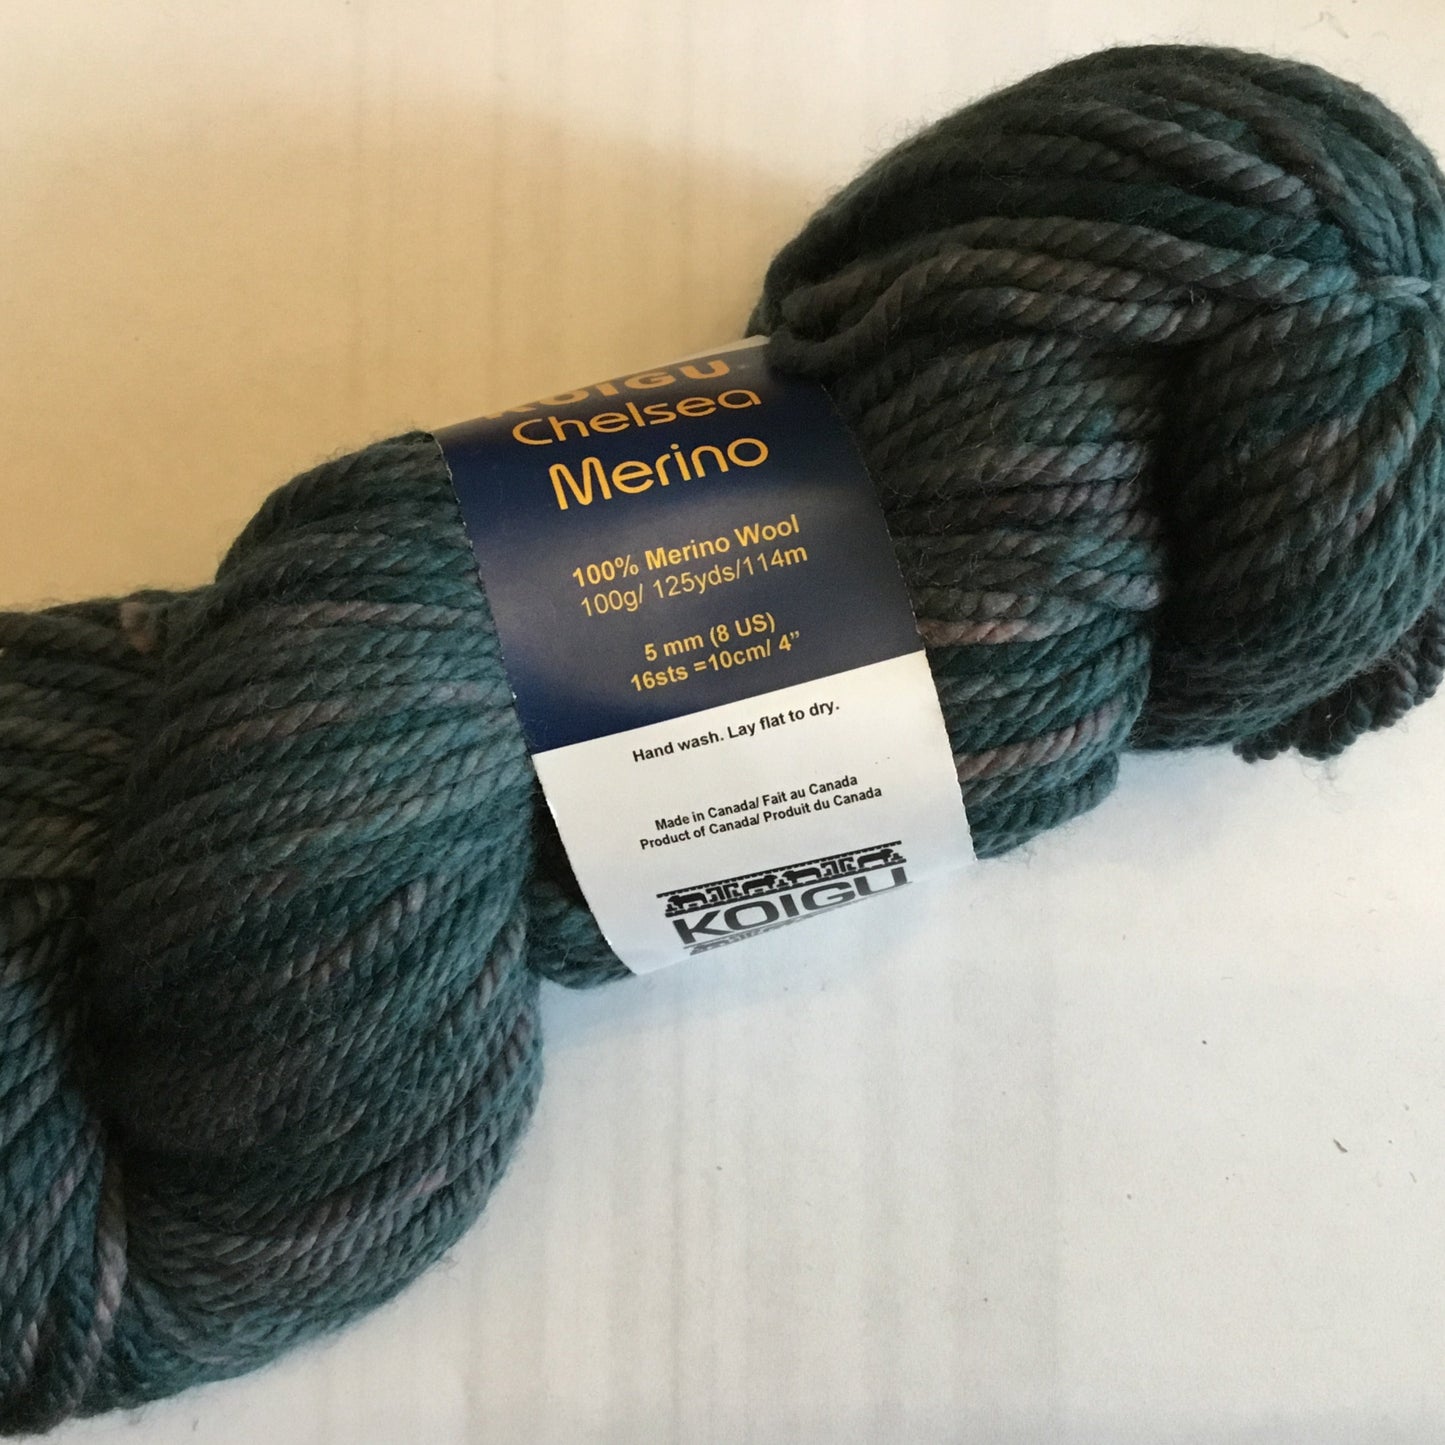 Koigu Merino Wool C3016